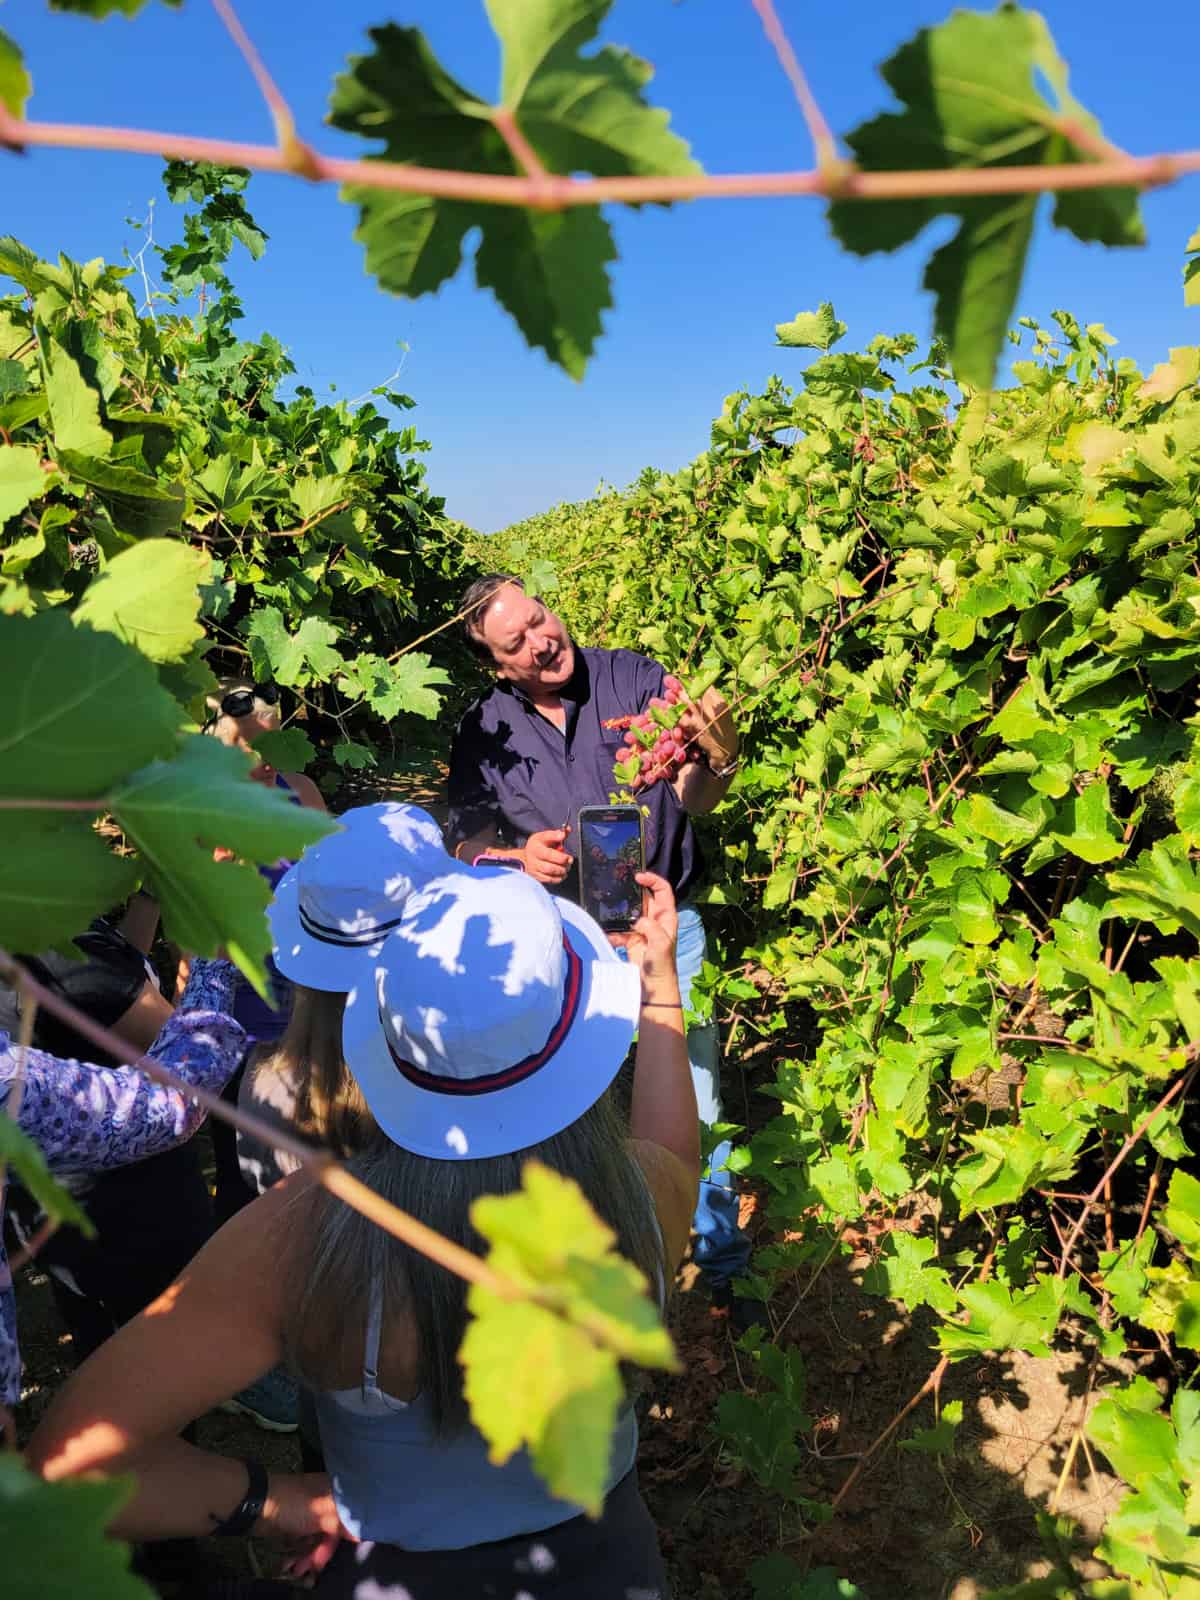 An image of a grape grower giving a vineyard tour.